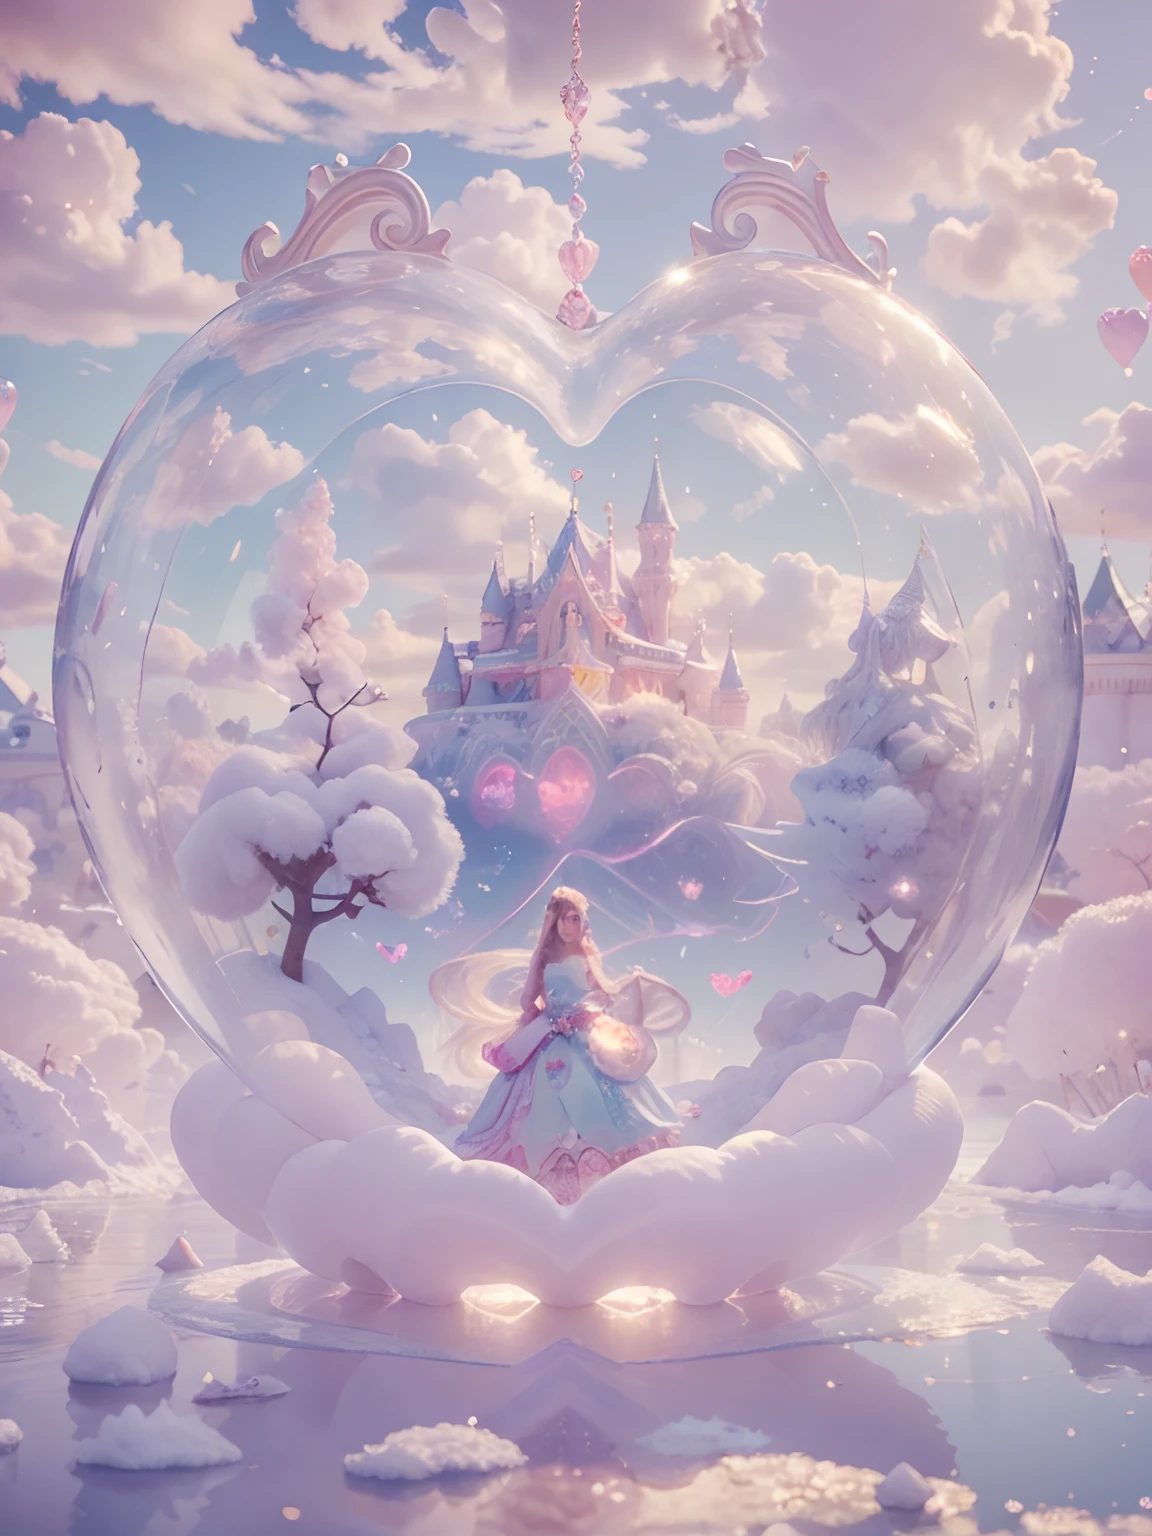 在心形泡泡里，一位棉花糖女王女性女神 8k 分辨率渲染超现实的复杂细节，生活在一个冰冷的心形冰泡泡里, 充满城堡的奇幻之地, 棉花糖, 天鹅湖和蓬松的云彩, 计算机编程的复杂视觉表现, 以 24k 分辨率呈现，包含复杂的细节和符号.